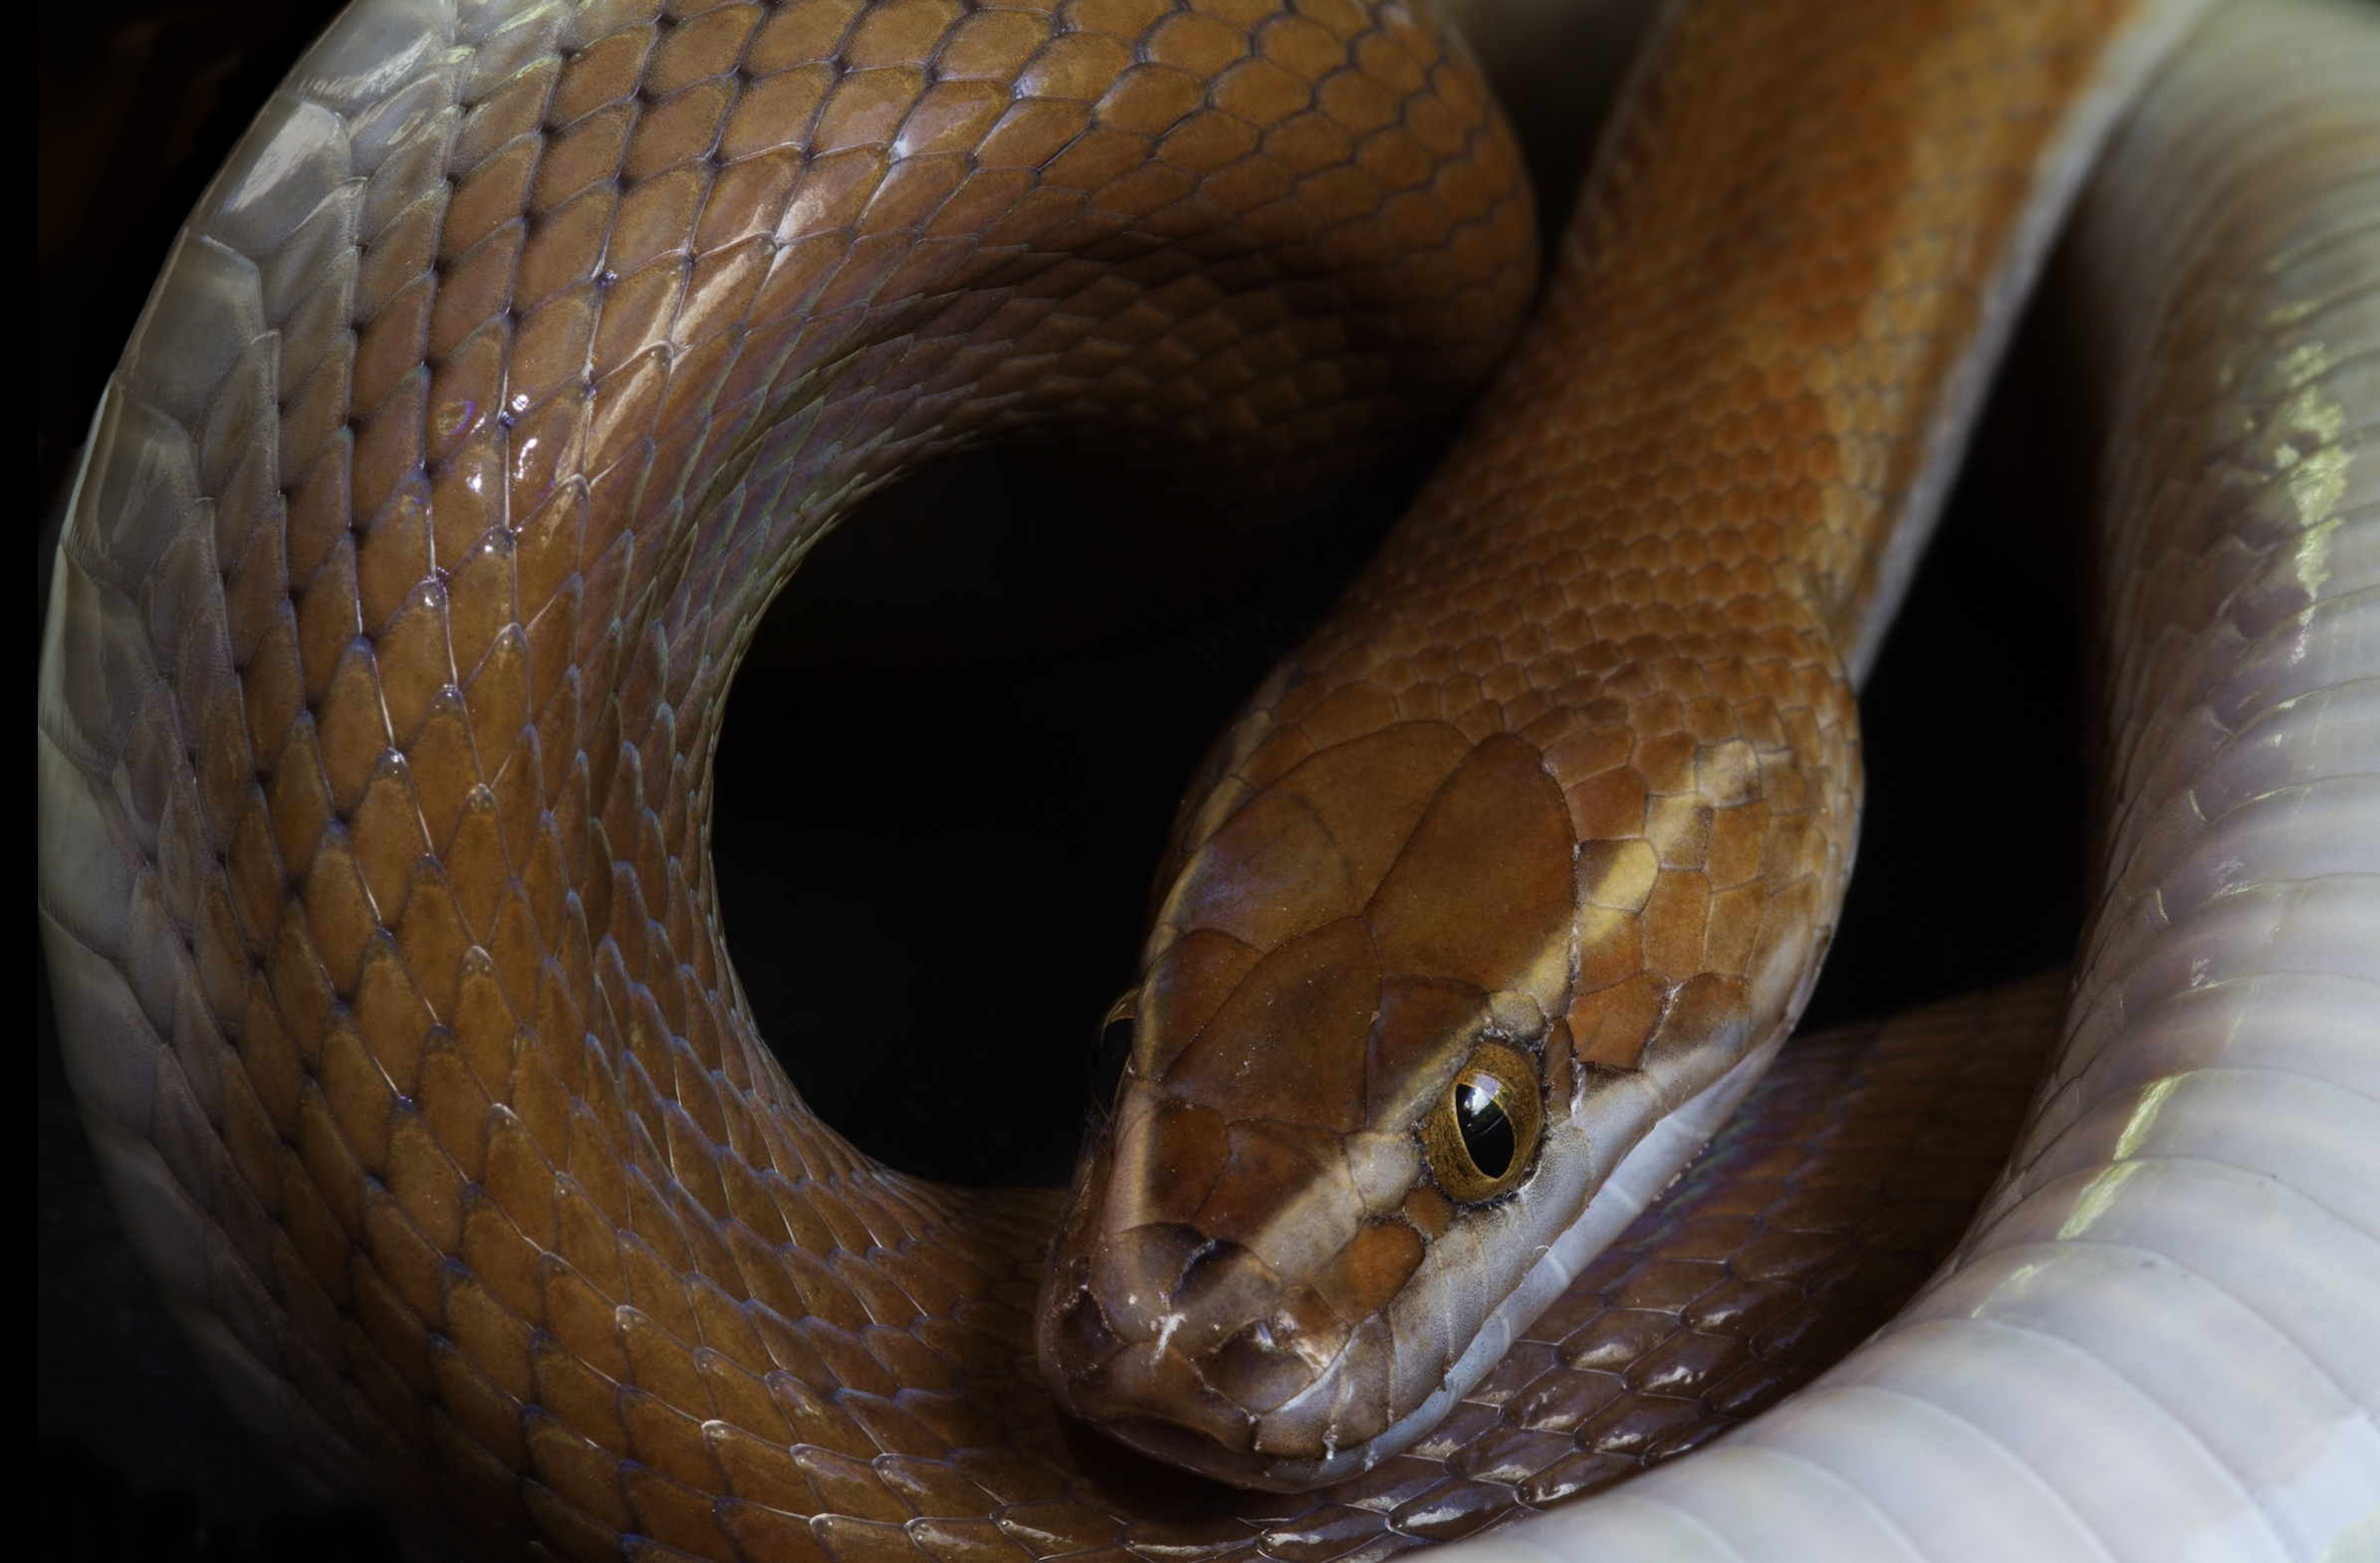 Slangen op 'e muorre: wat betsjut it om te dreamen oer dizze reptilen?